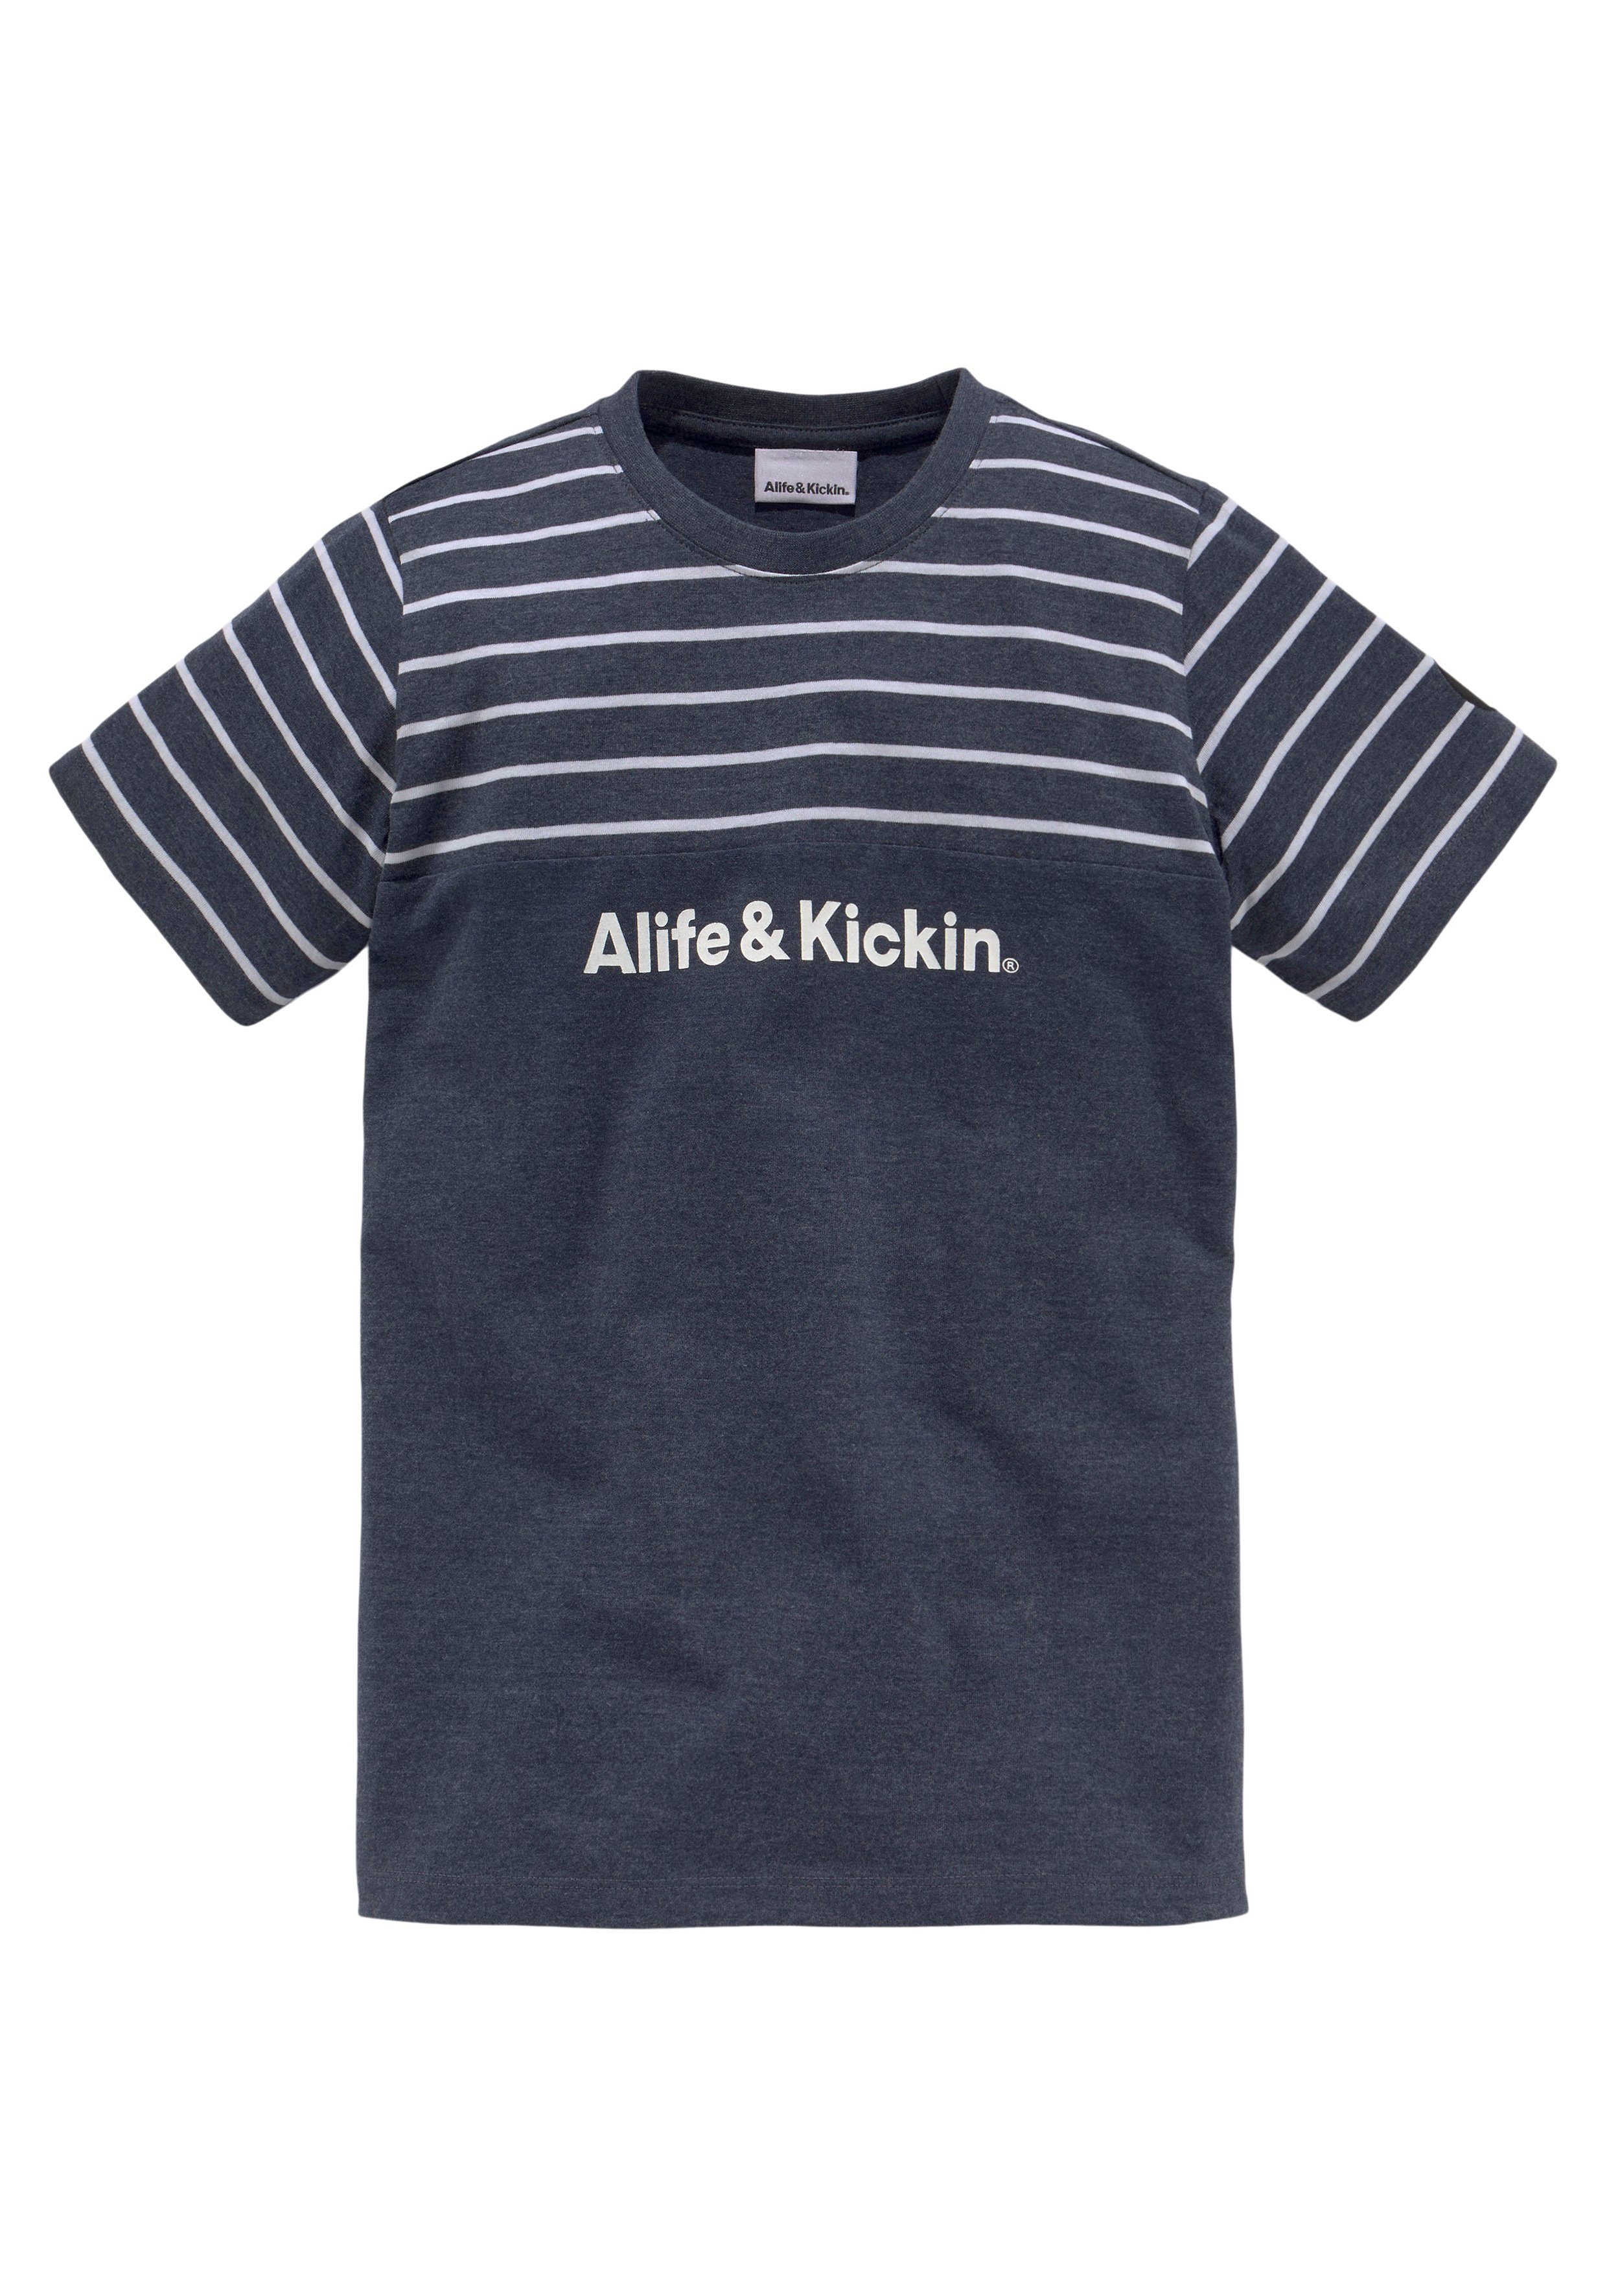 und Alife melierter NEUE garngefärbten & Colorblocking Kickin Ringel, in MARKE! T-Shirt Qualität